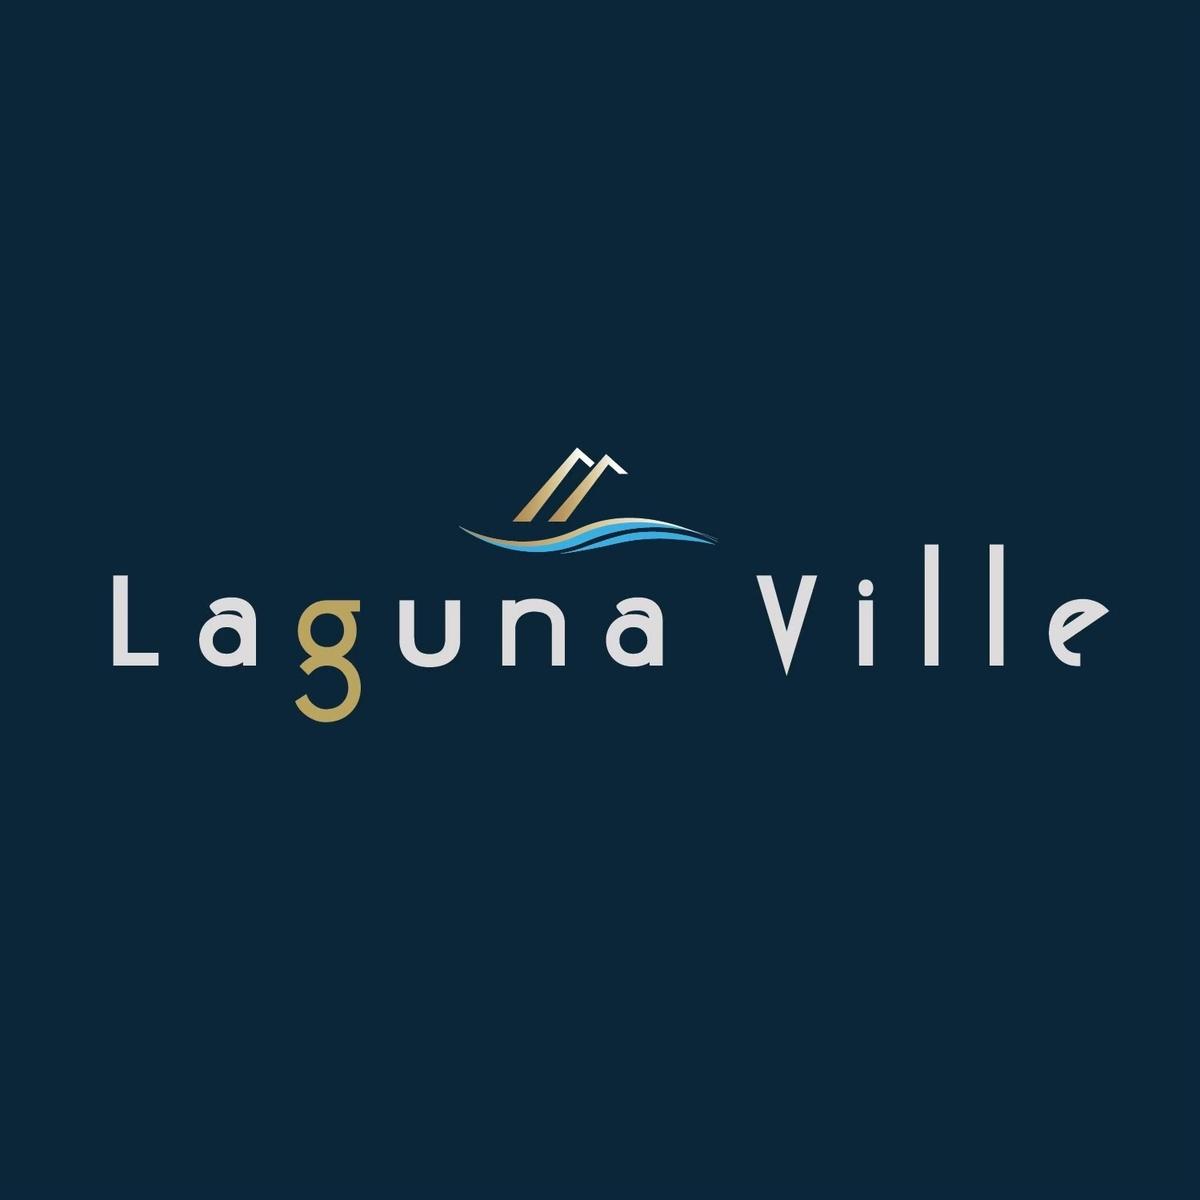 Lagunaville